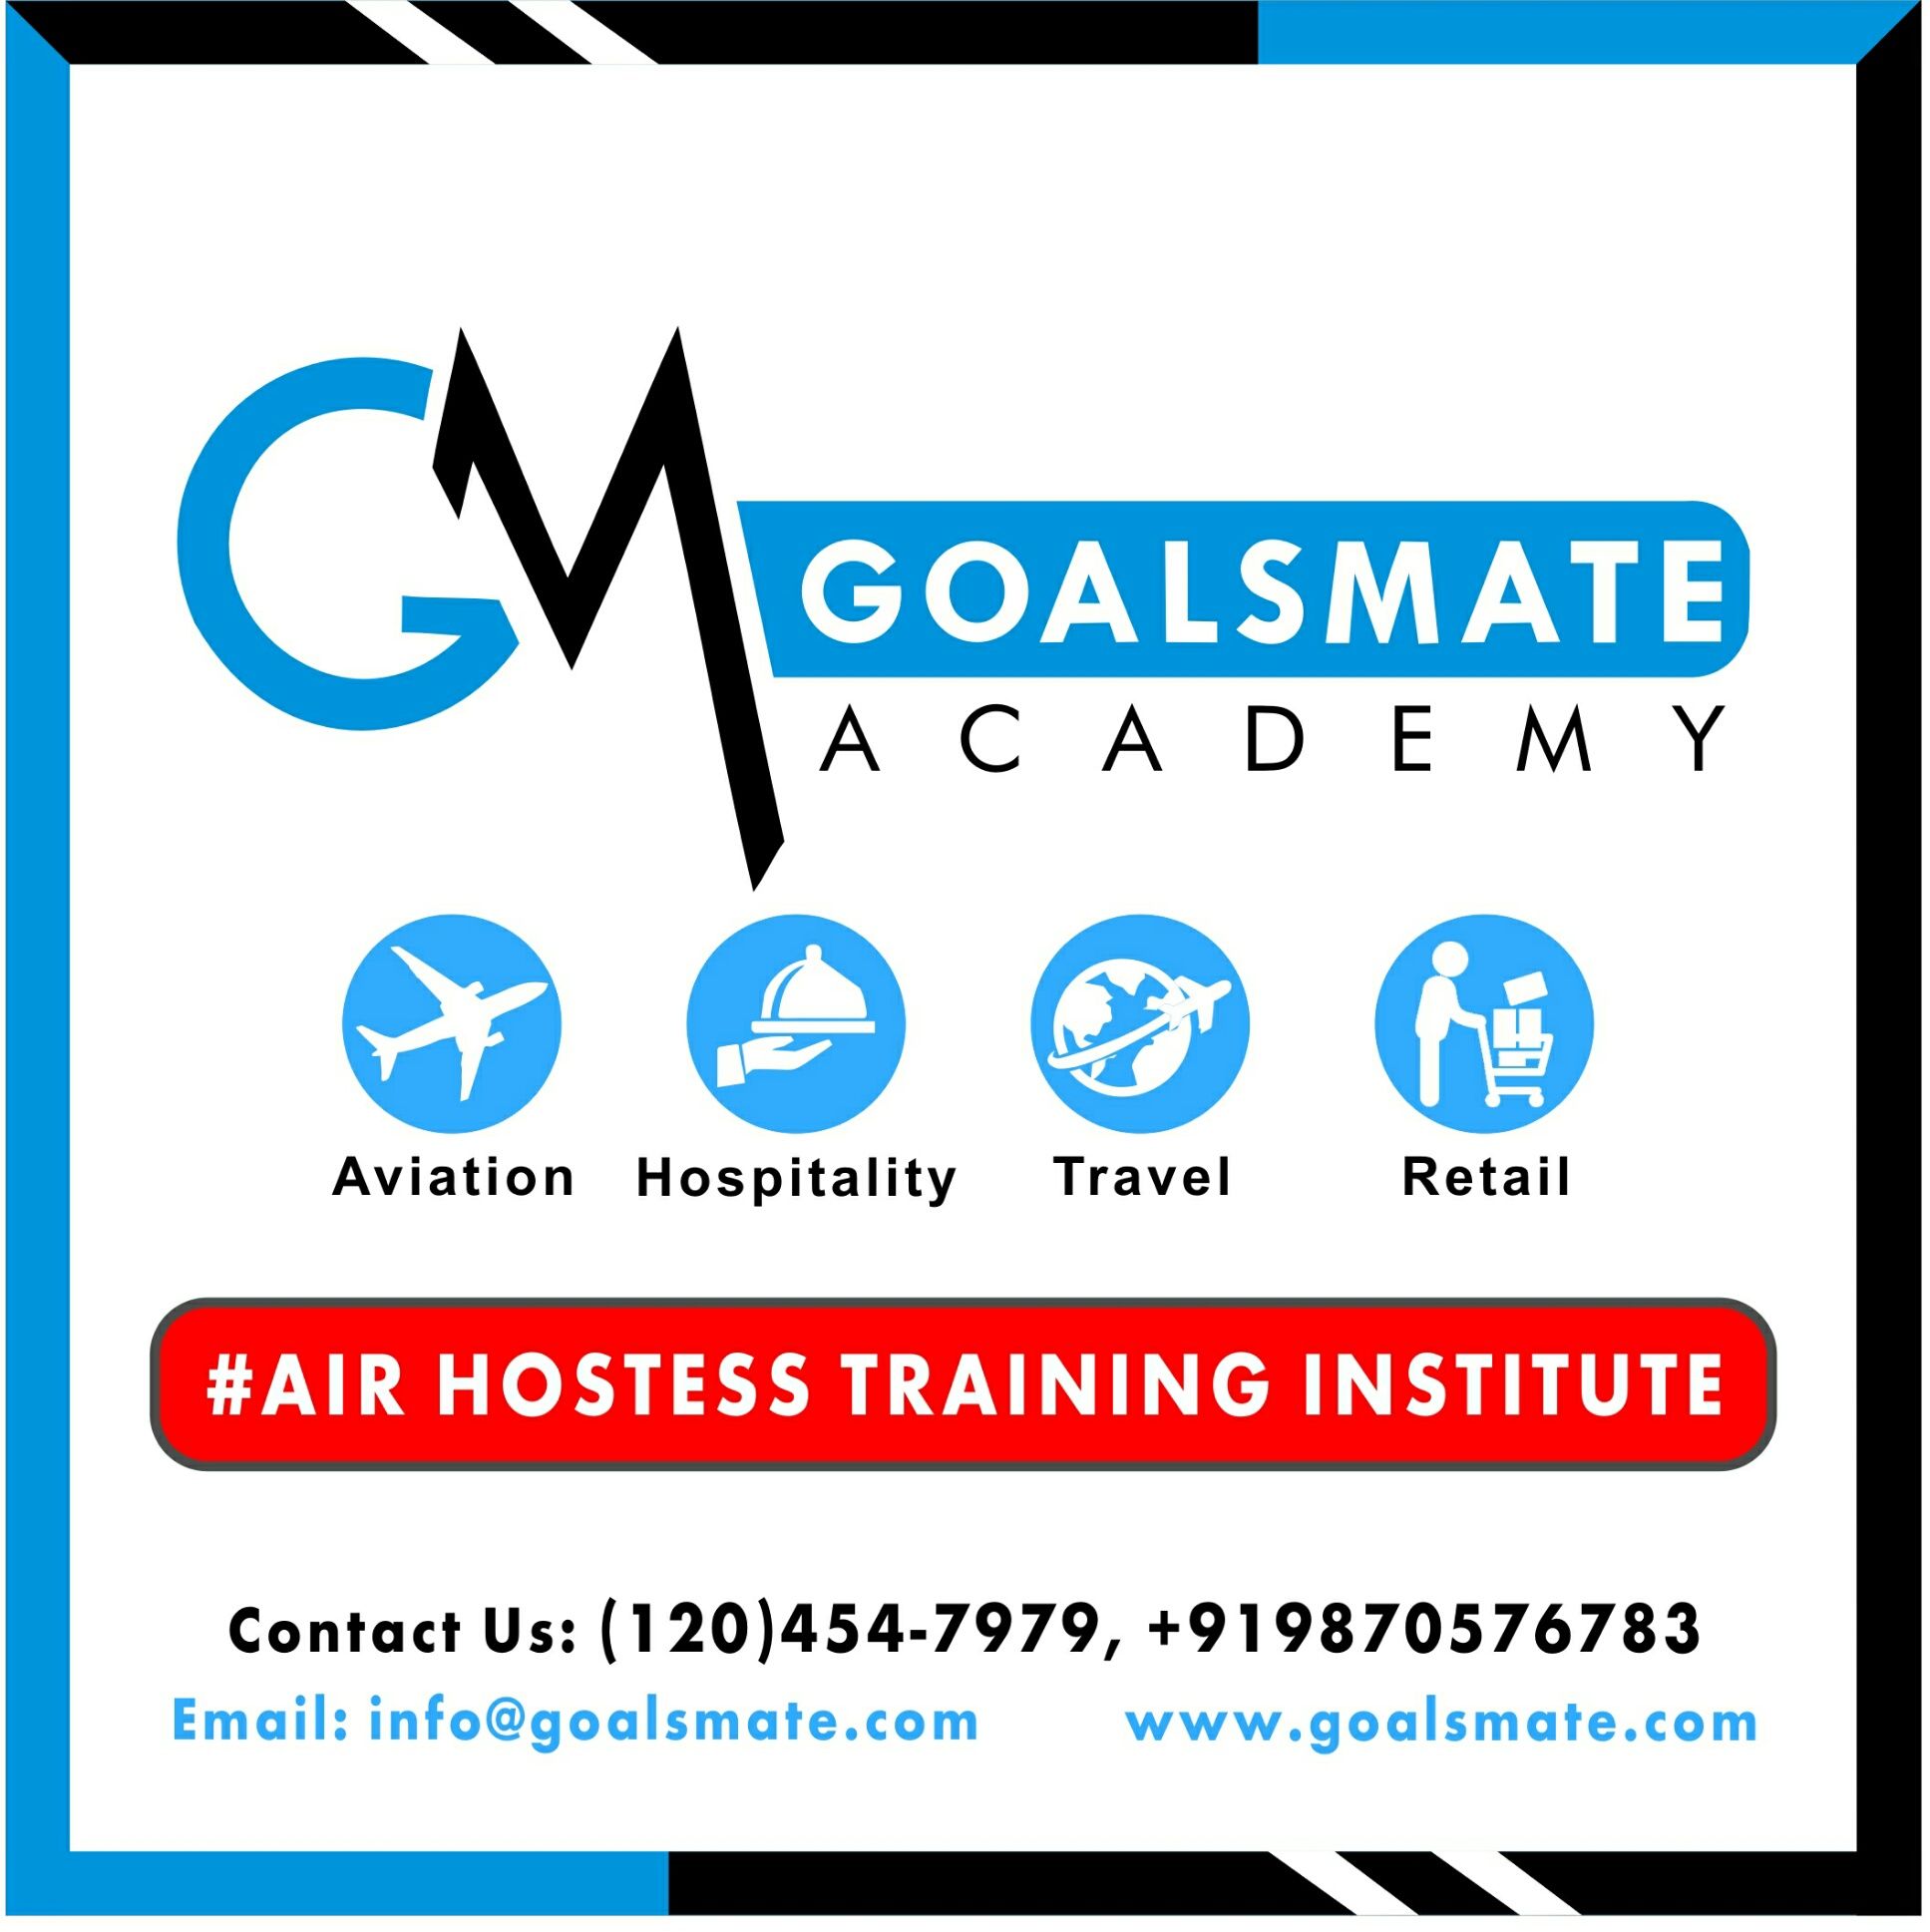 Air hostess institute in Noida - Goalsmate